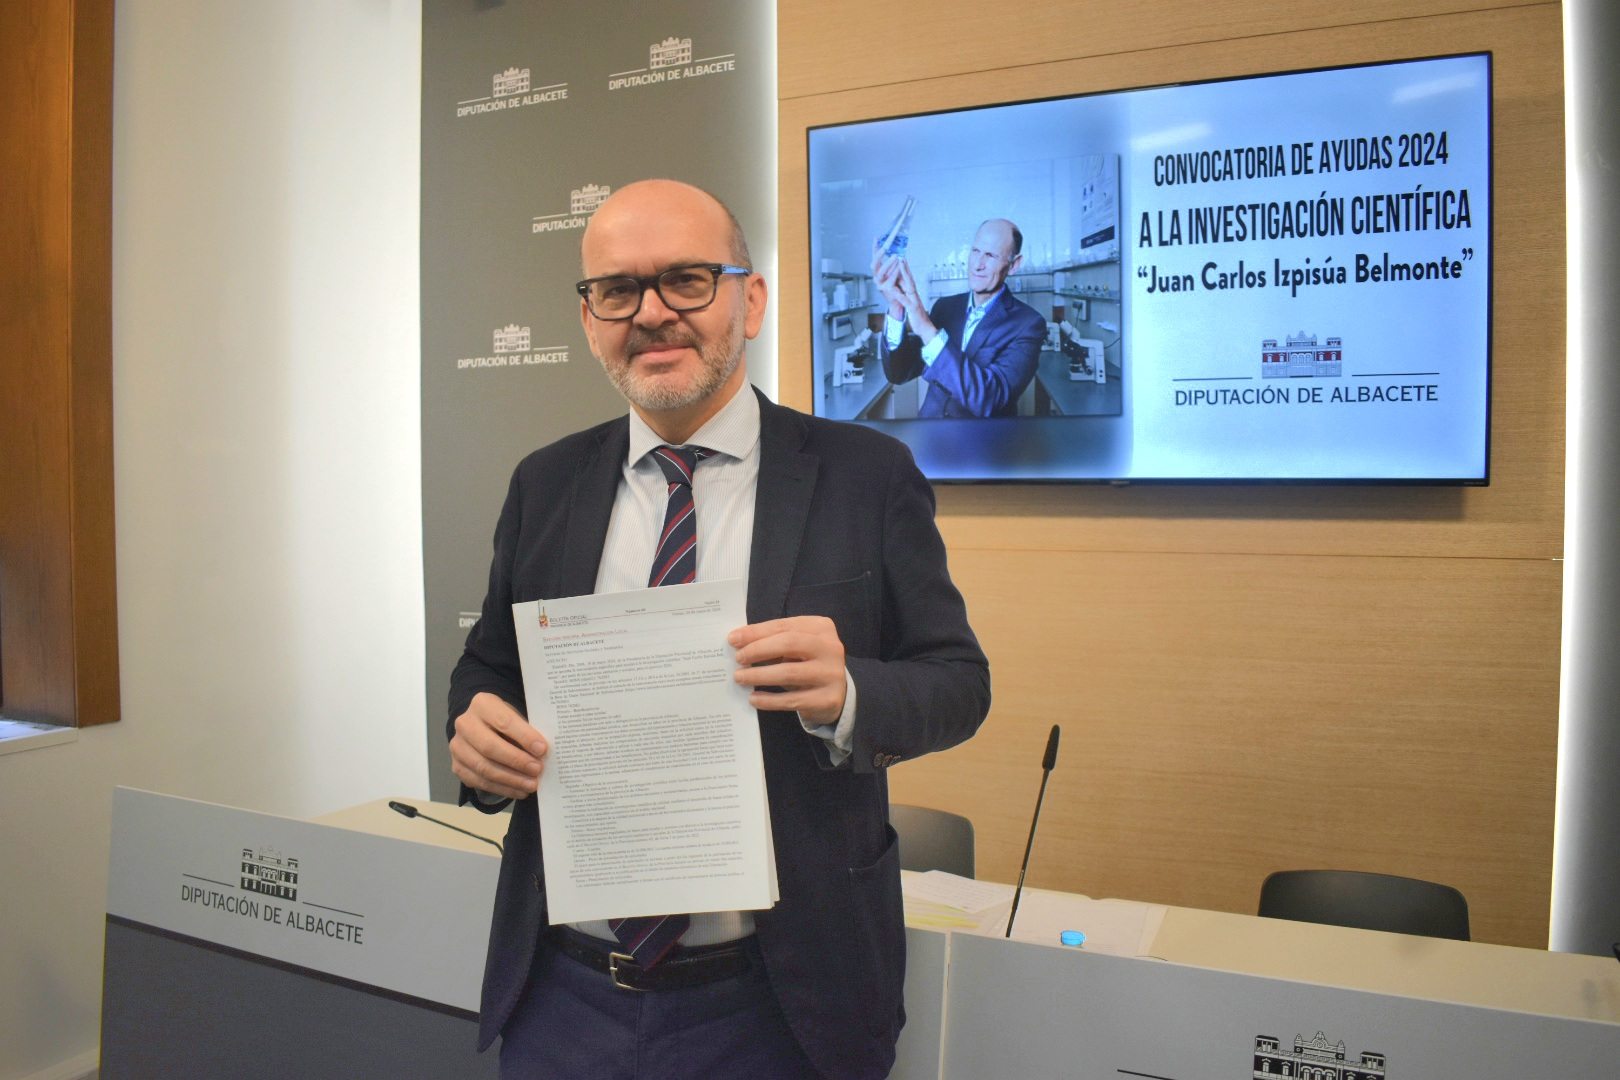 Convocatoria de ayudas a la investigación científica 'Juan Carlos Izpisúa Belmonte'